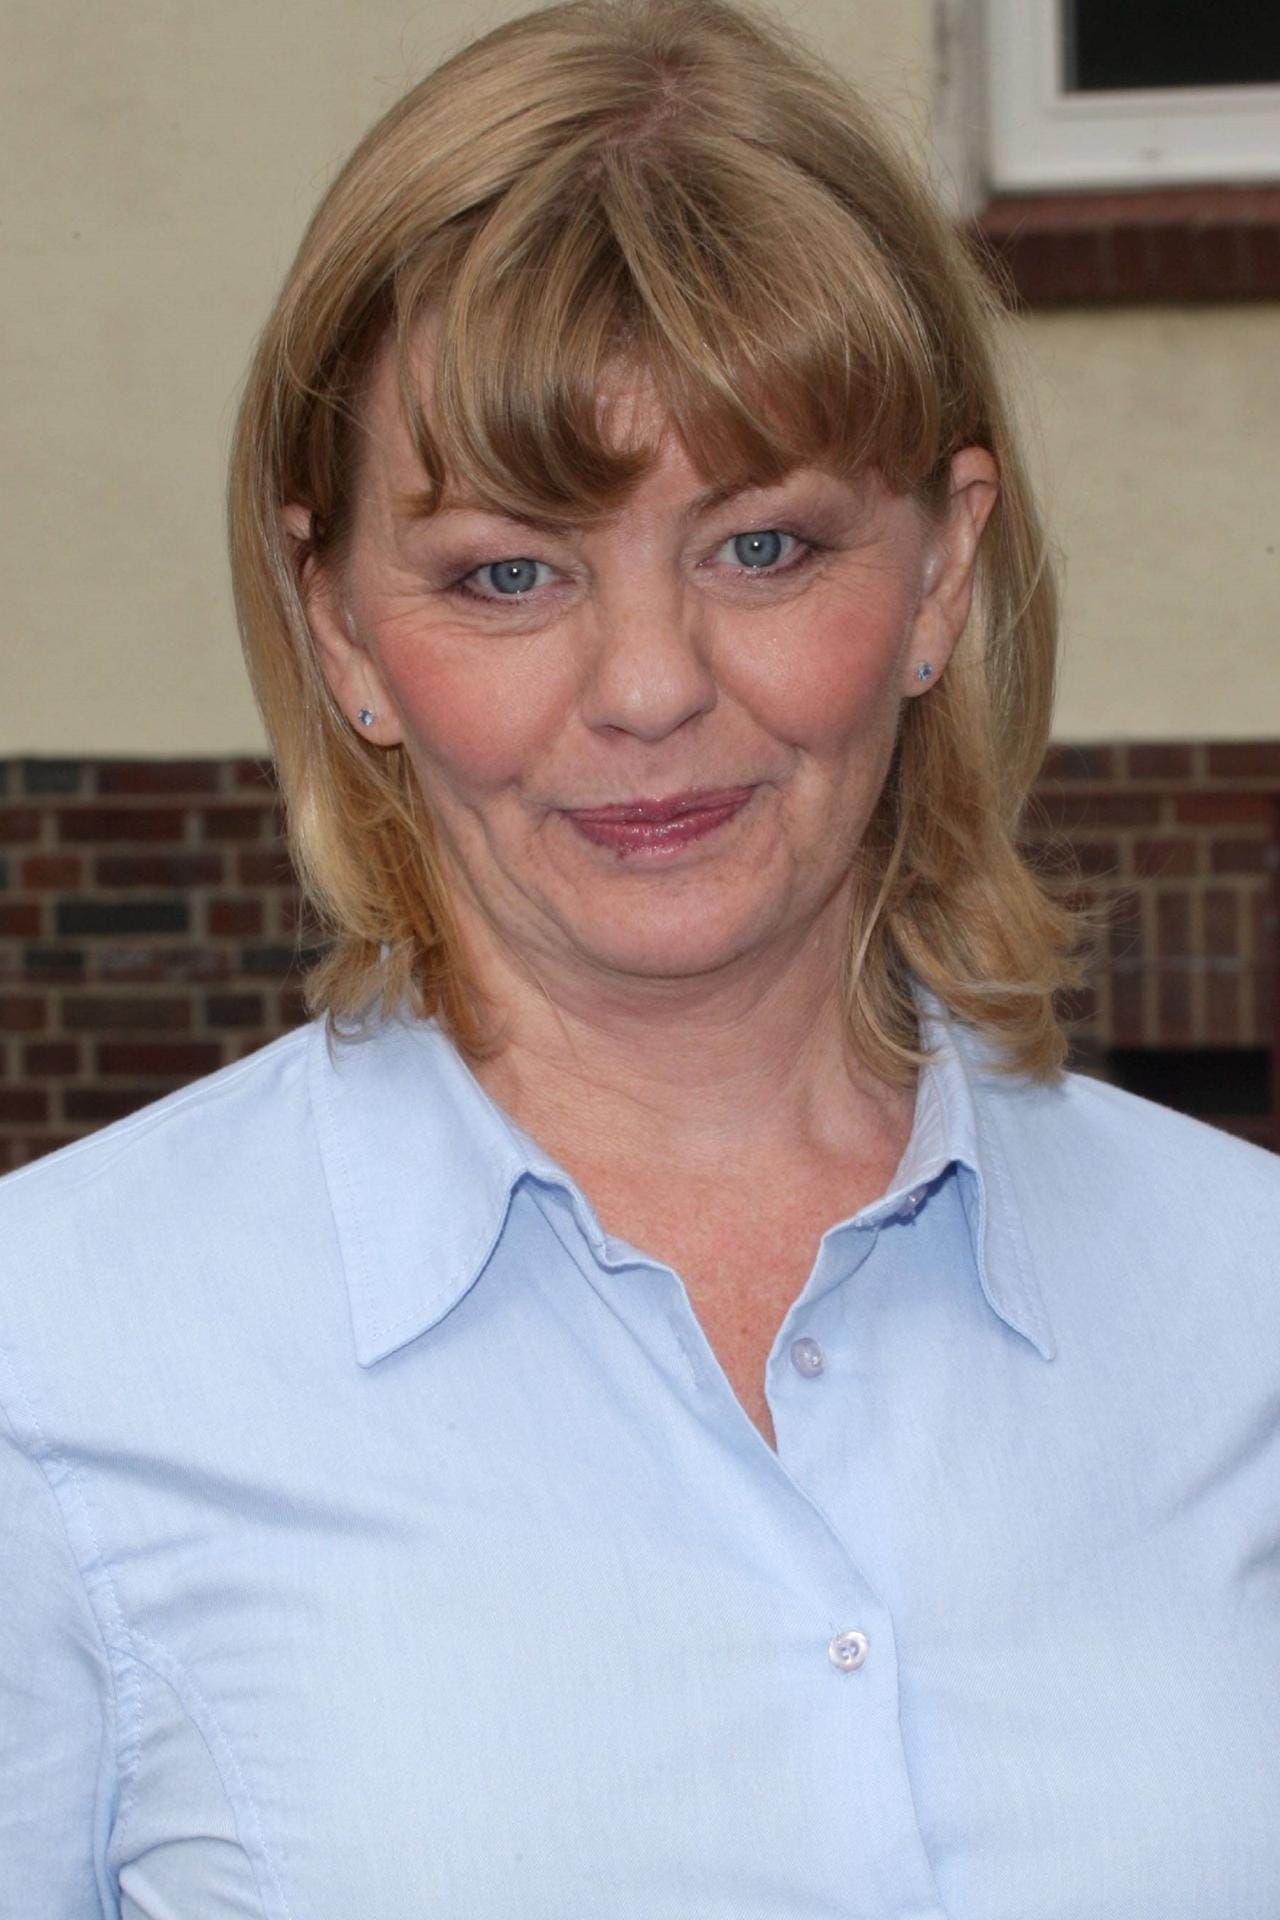 Seit 2007 steht Inger Nilsson für die ZDF-Serie "Der Kommissar und das Meer" vor der Kamera.